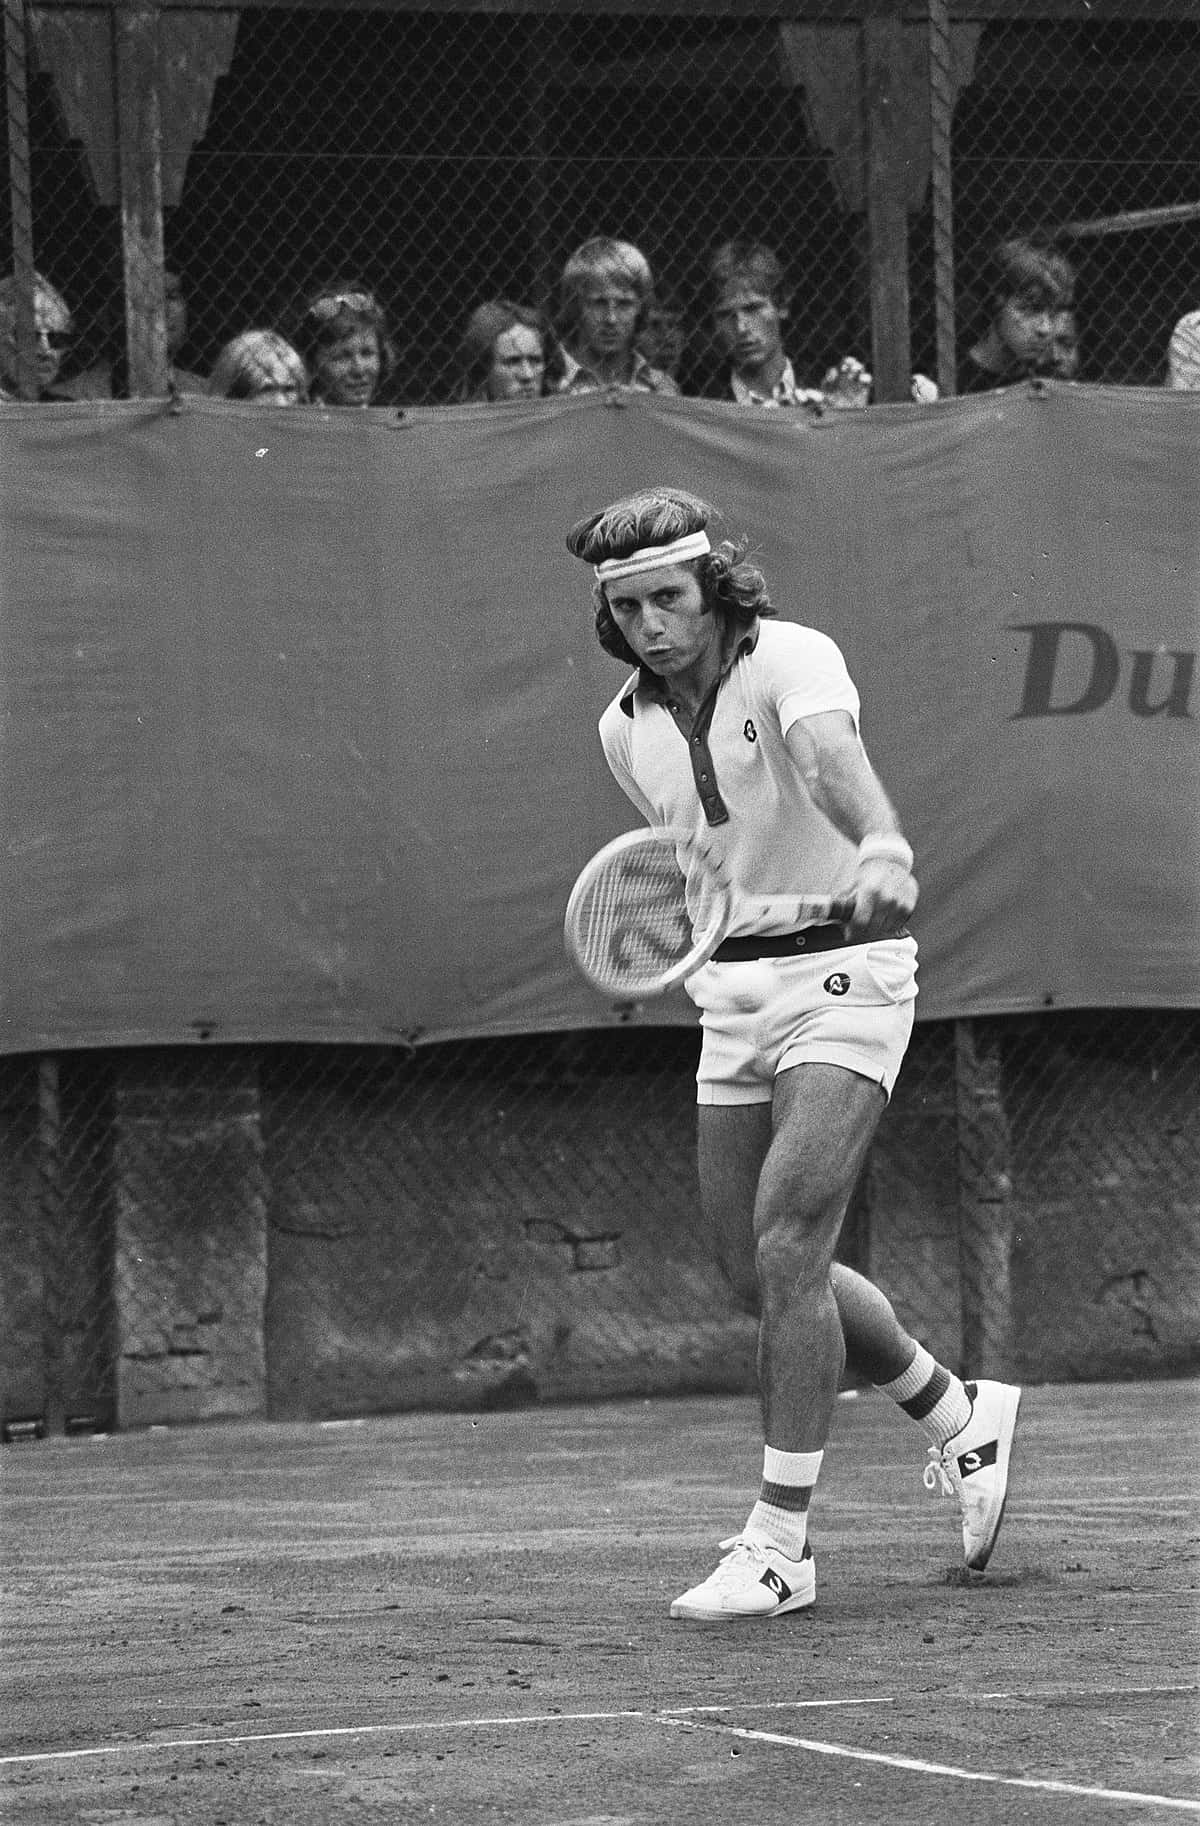 Campeonatointernacional De Tenis Guillermo Vilas 1975 Fondo de pantalla